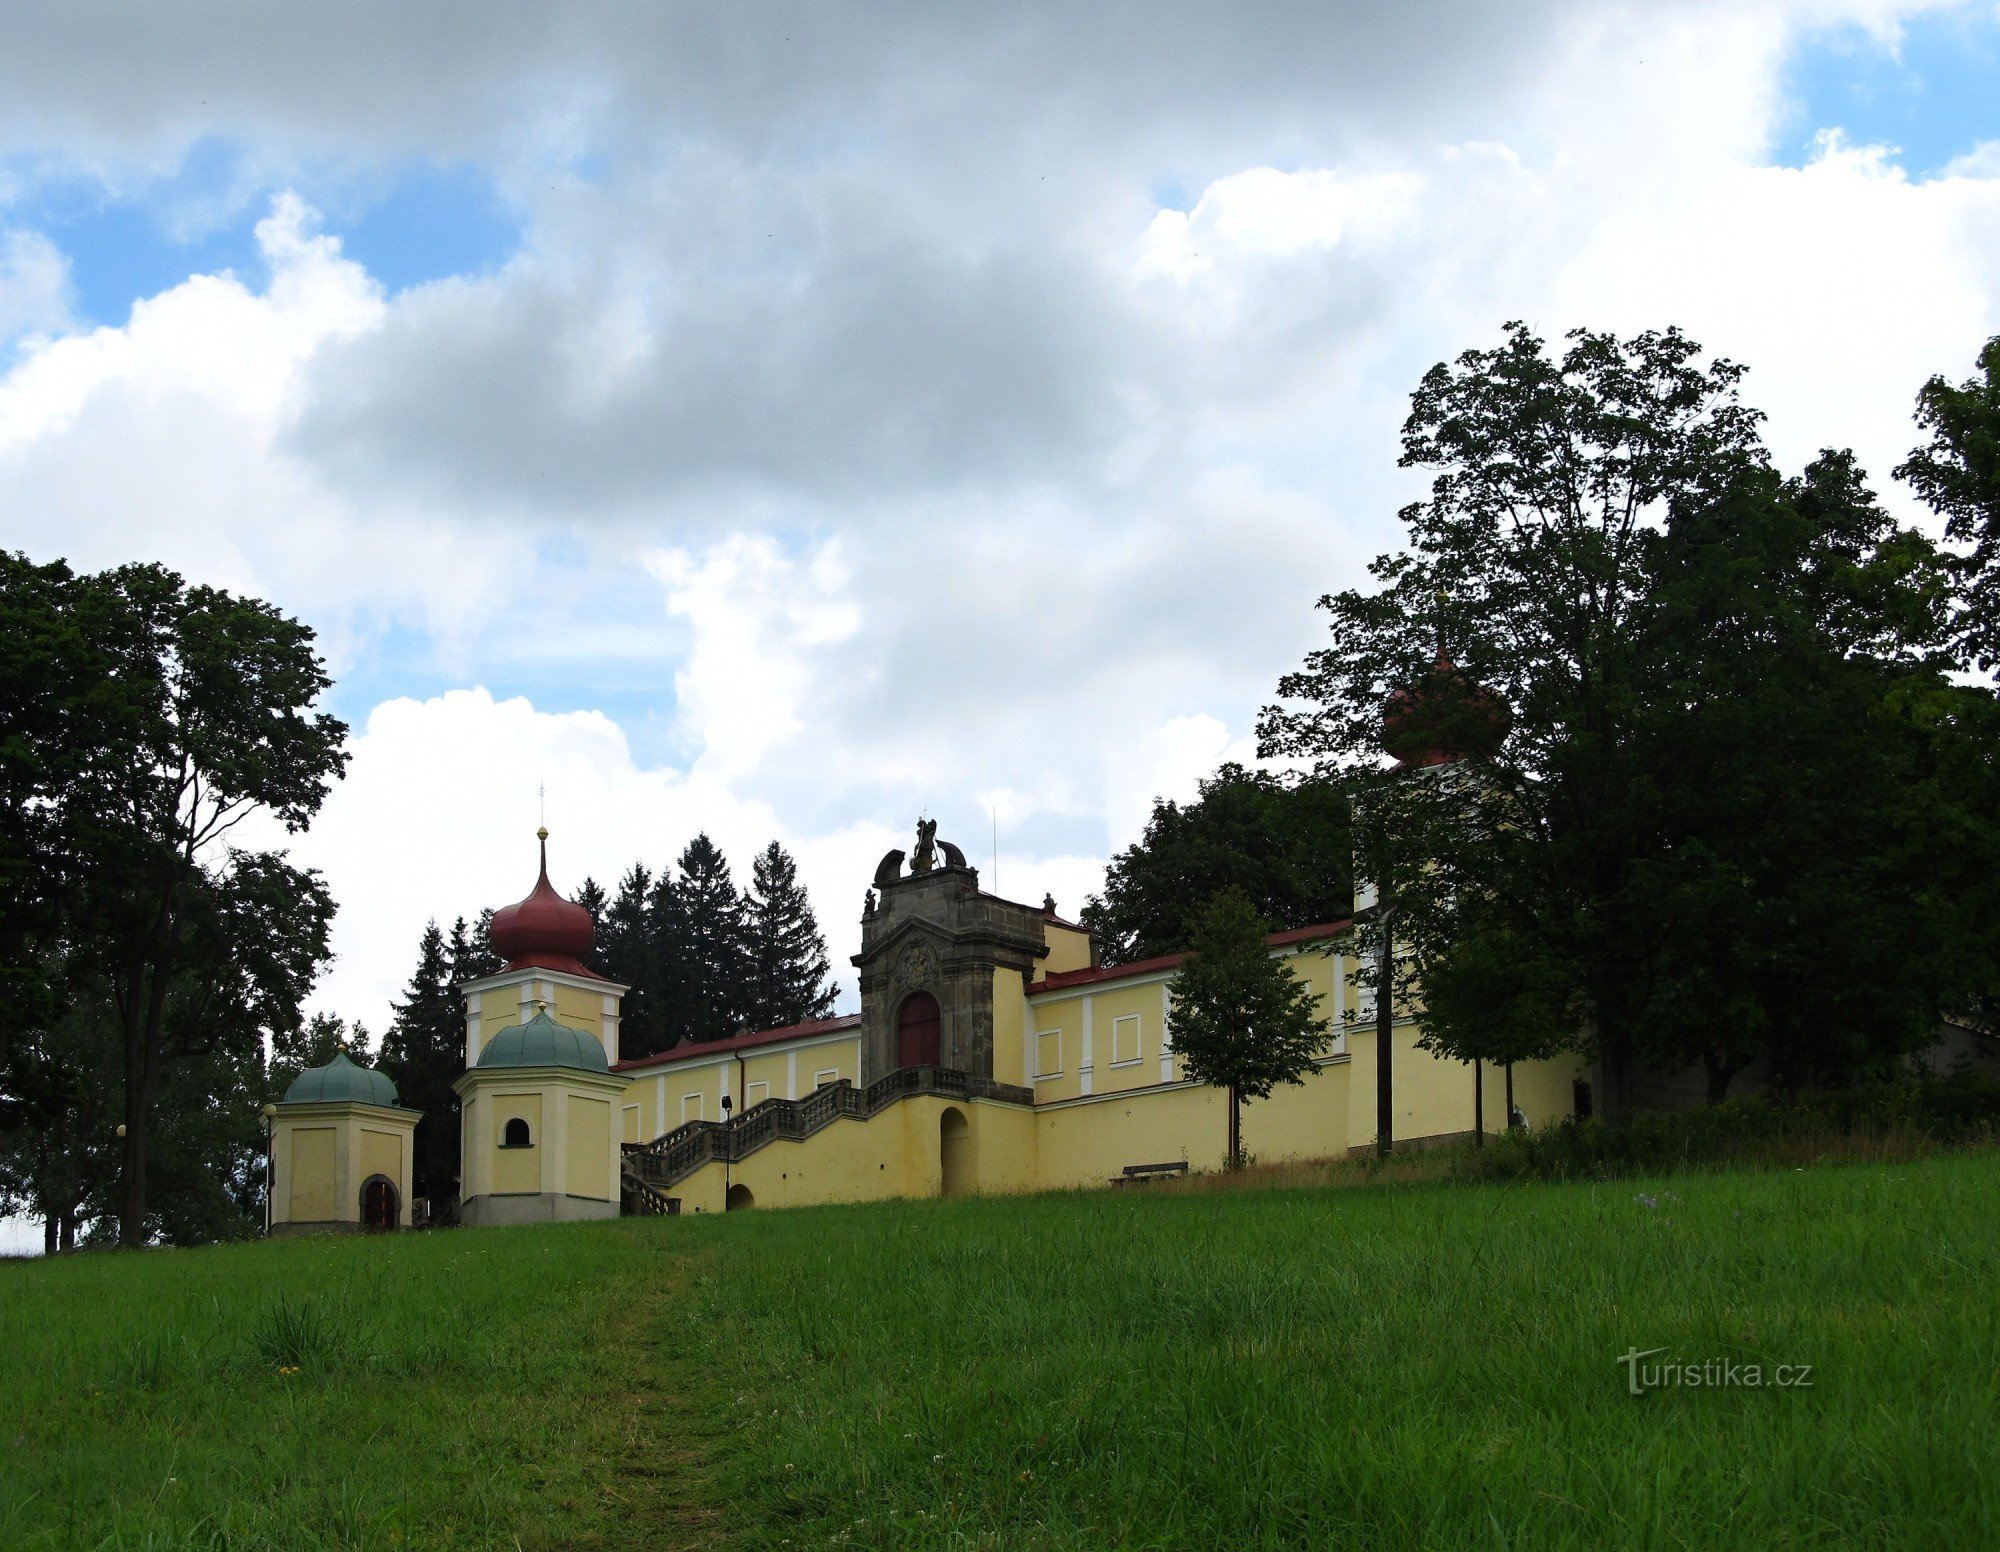 赫德奇修道院